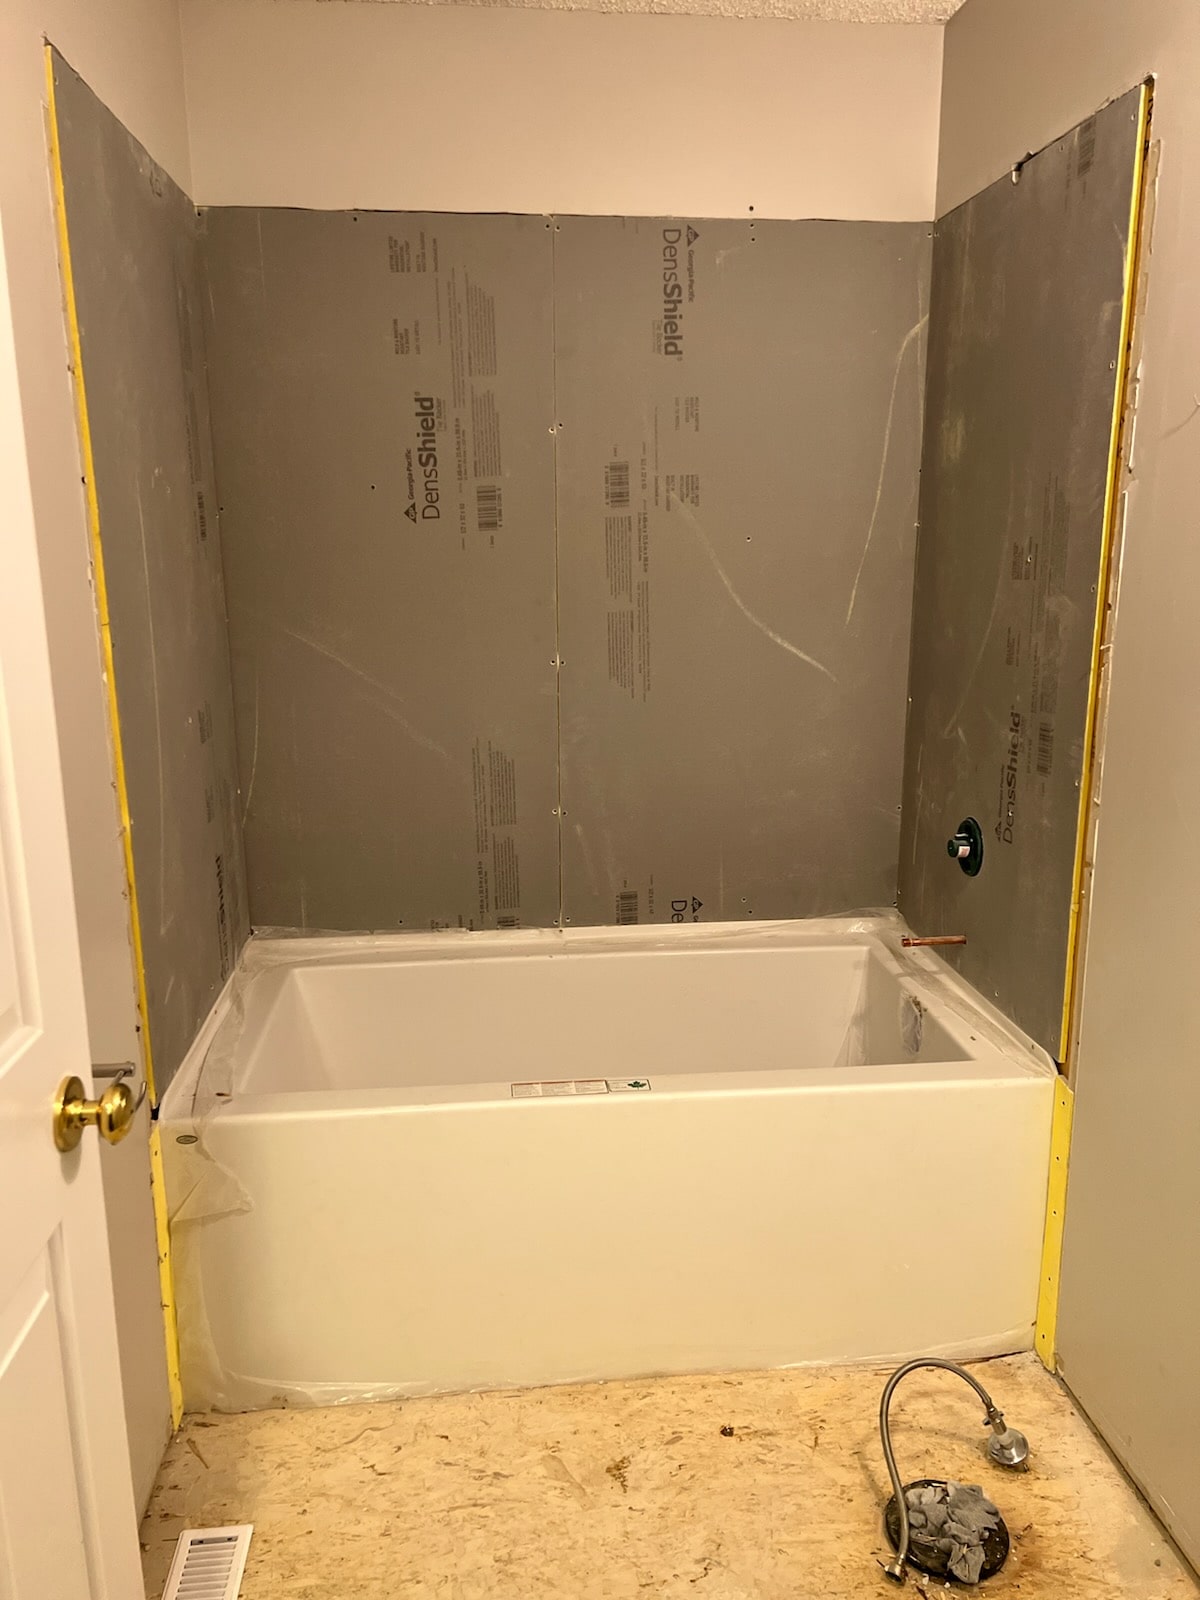 Renovation bath tub install